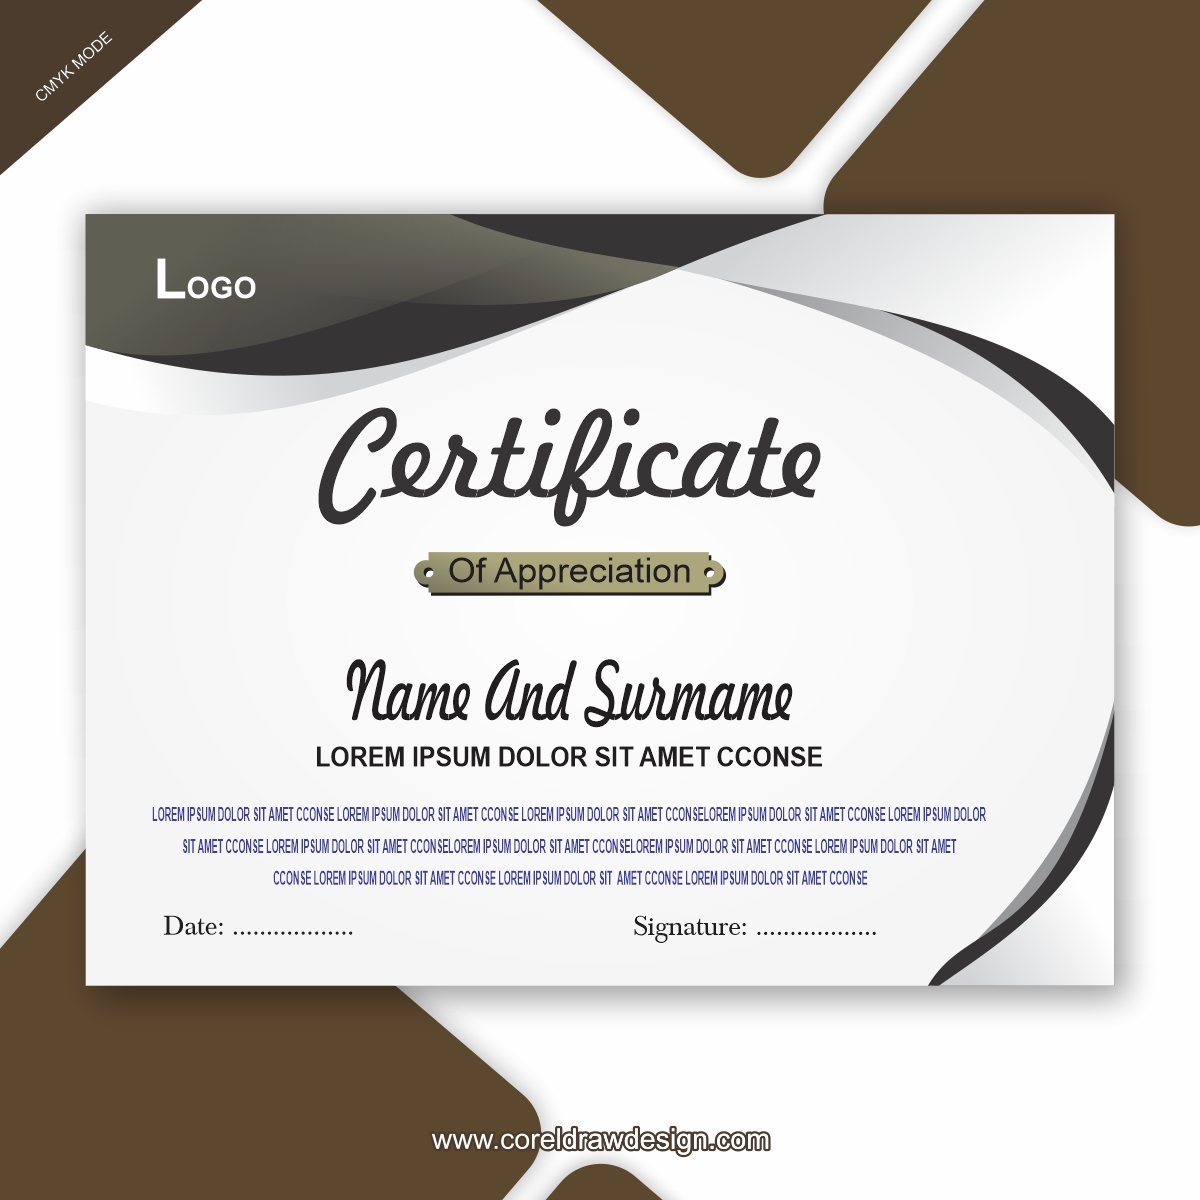 Corporate Certificate Design